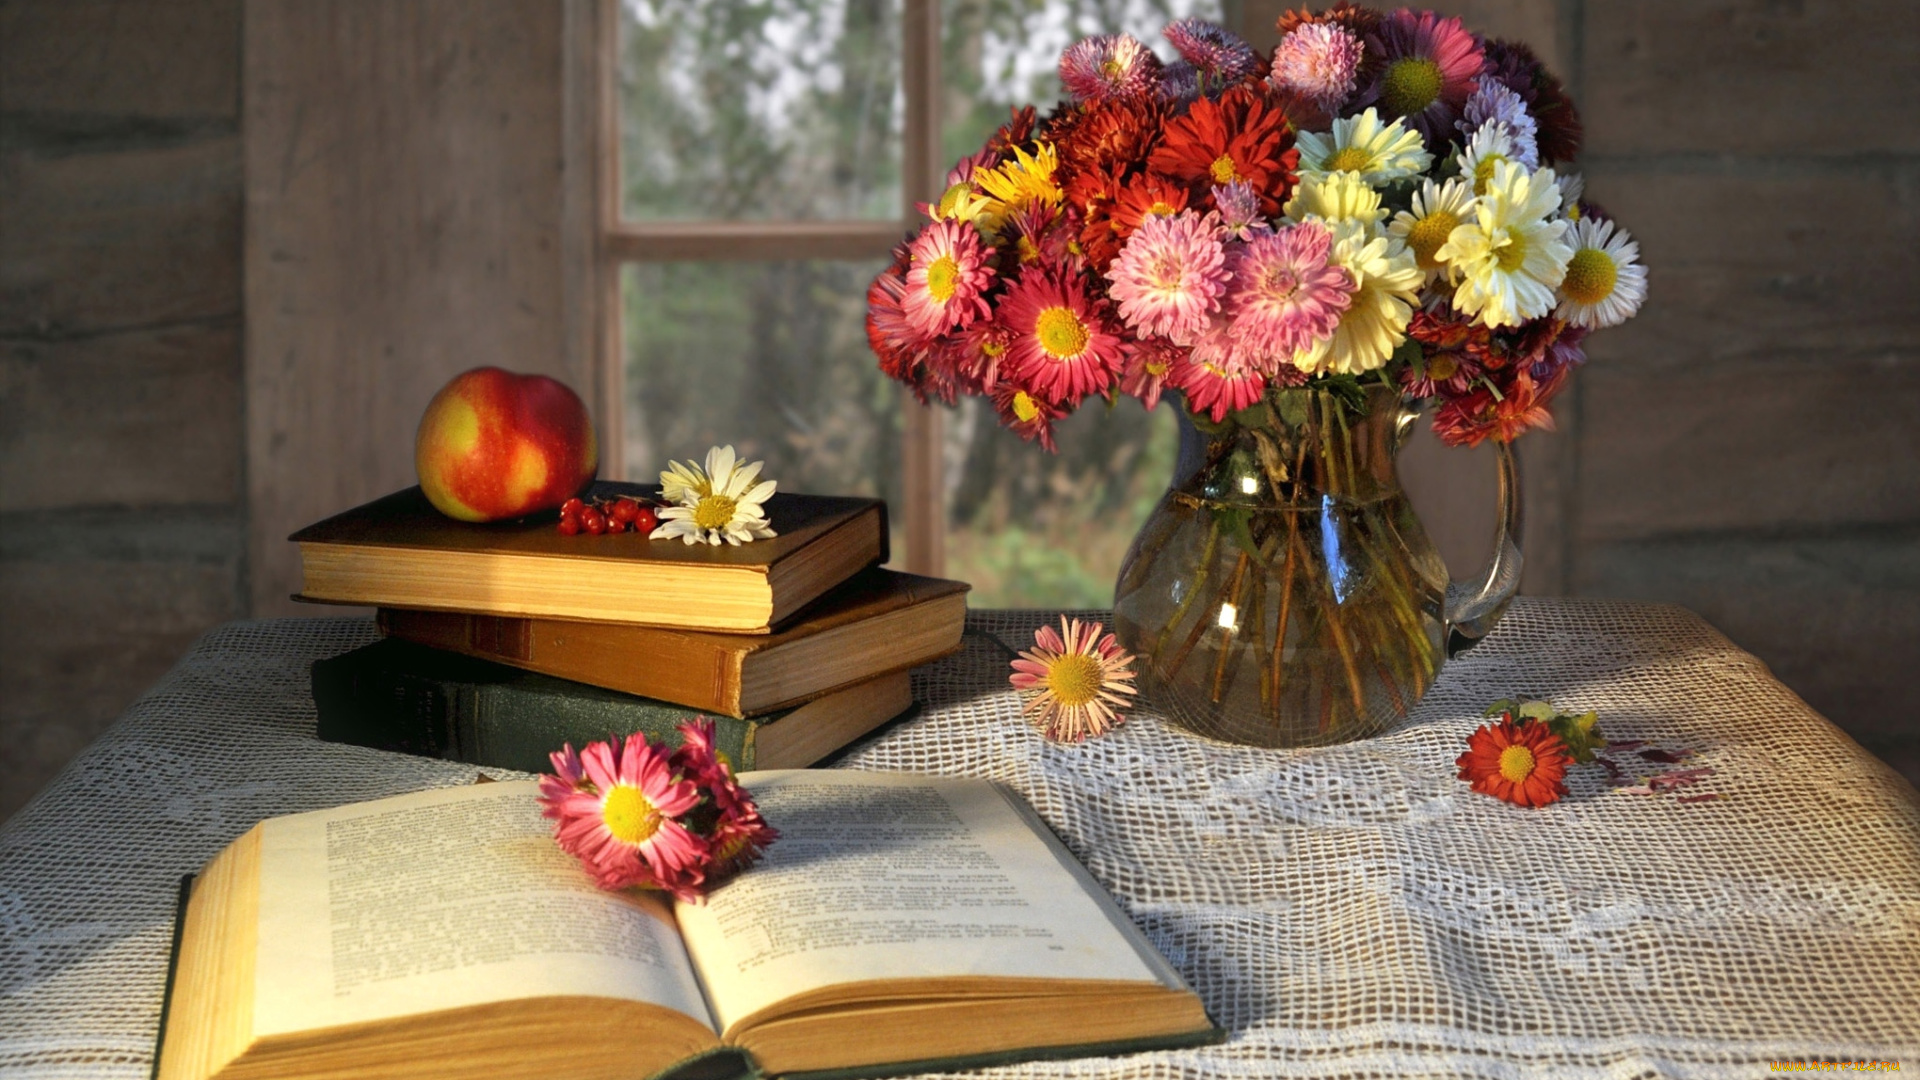 цветы, хризантемы, яблоко, натюрморт, книги, ваза